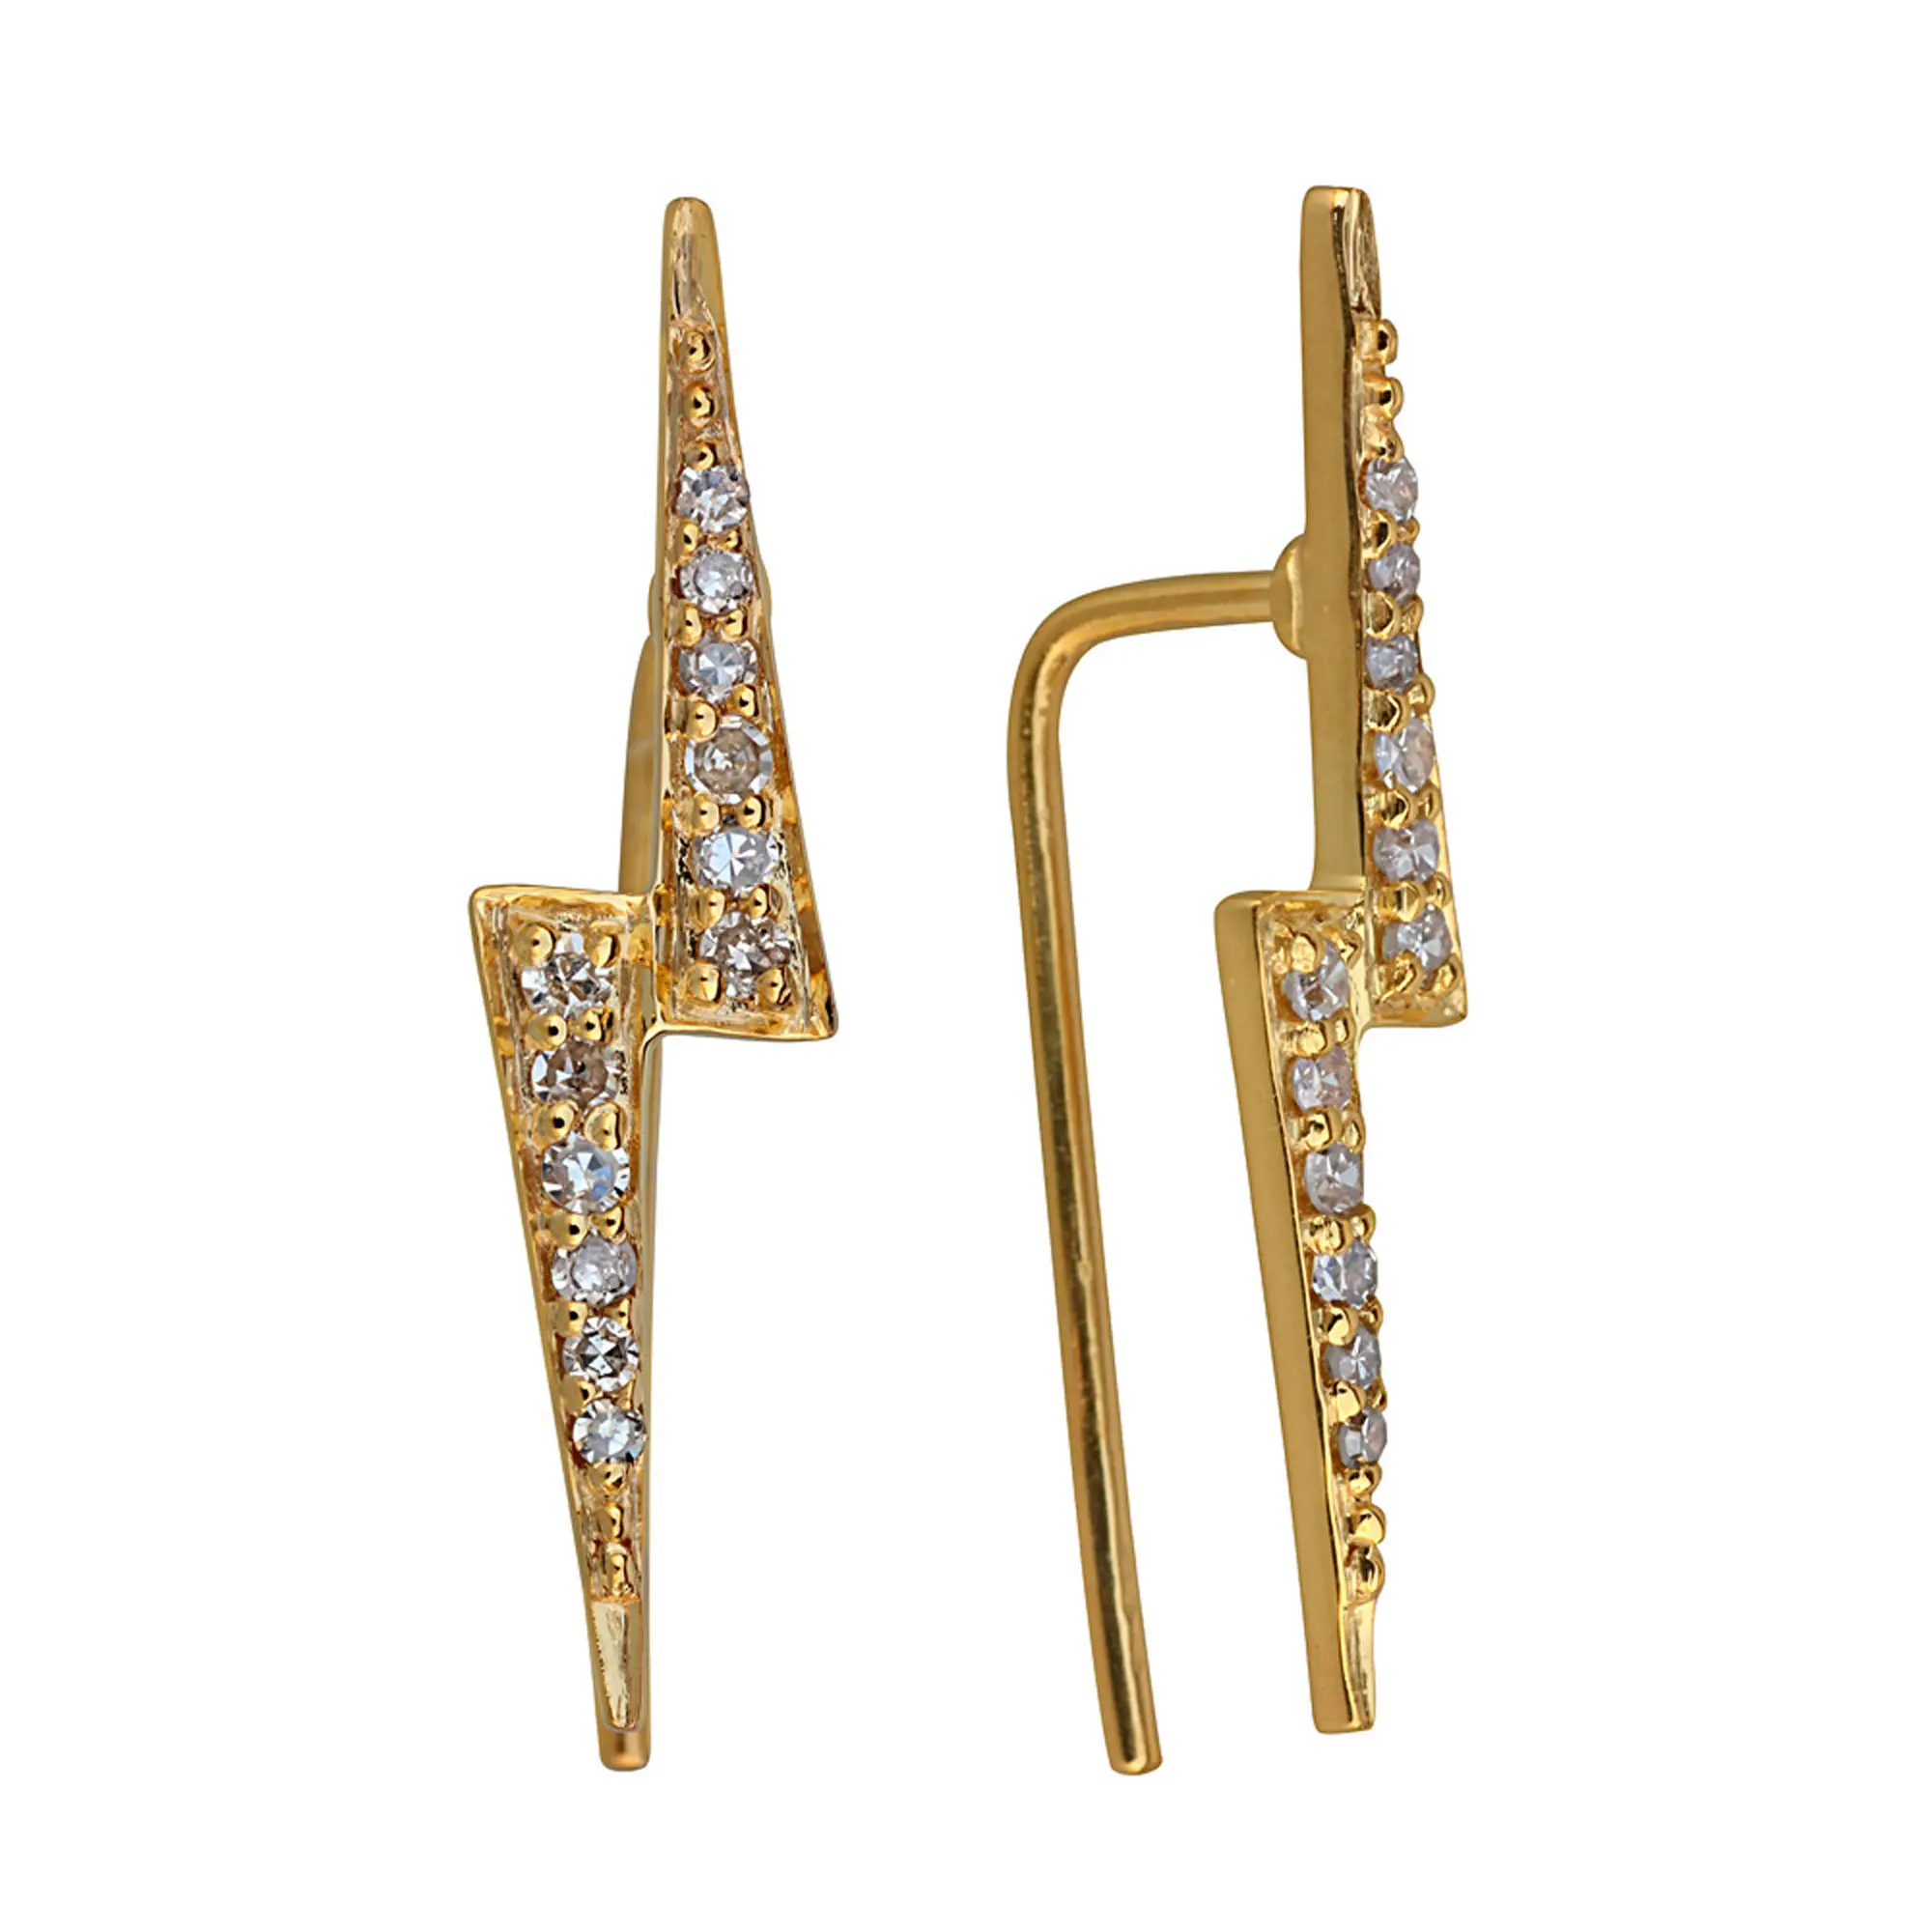 Desain Unik Thunderbolt Emas Kancing Anting Alami Pave Berlian 18K Kuning Kuat Emas Grosir Perhiasan Bagus untuk Hadiah